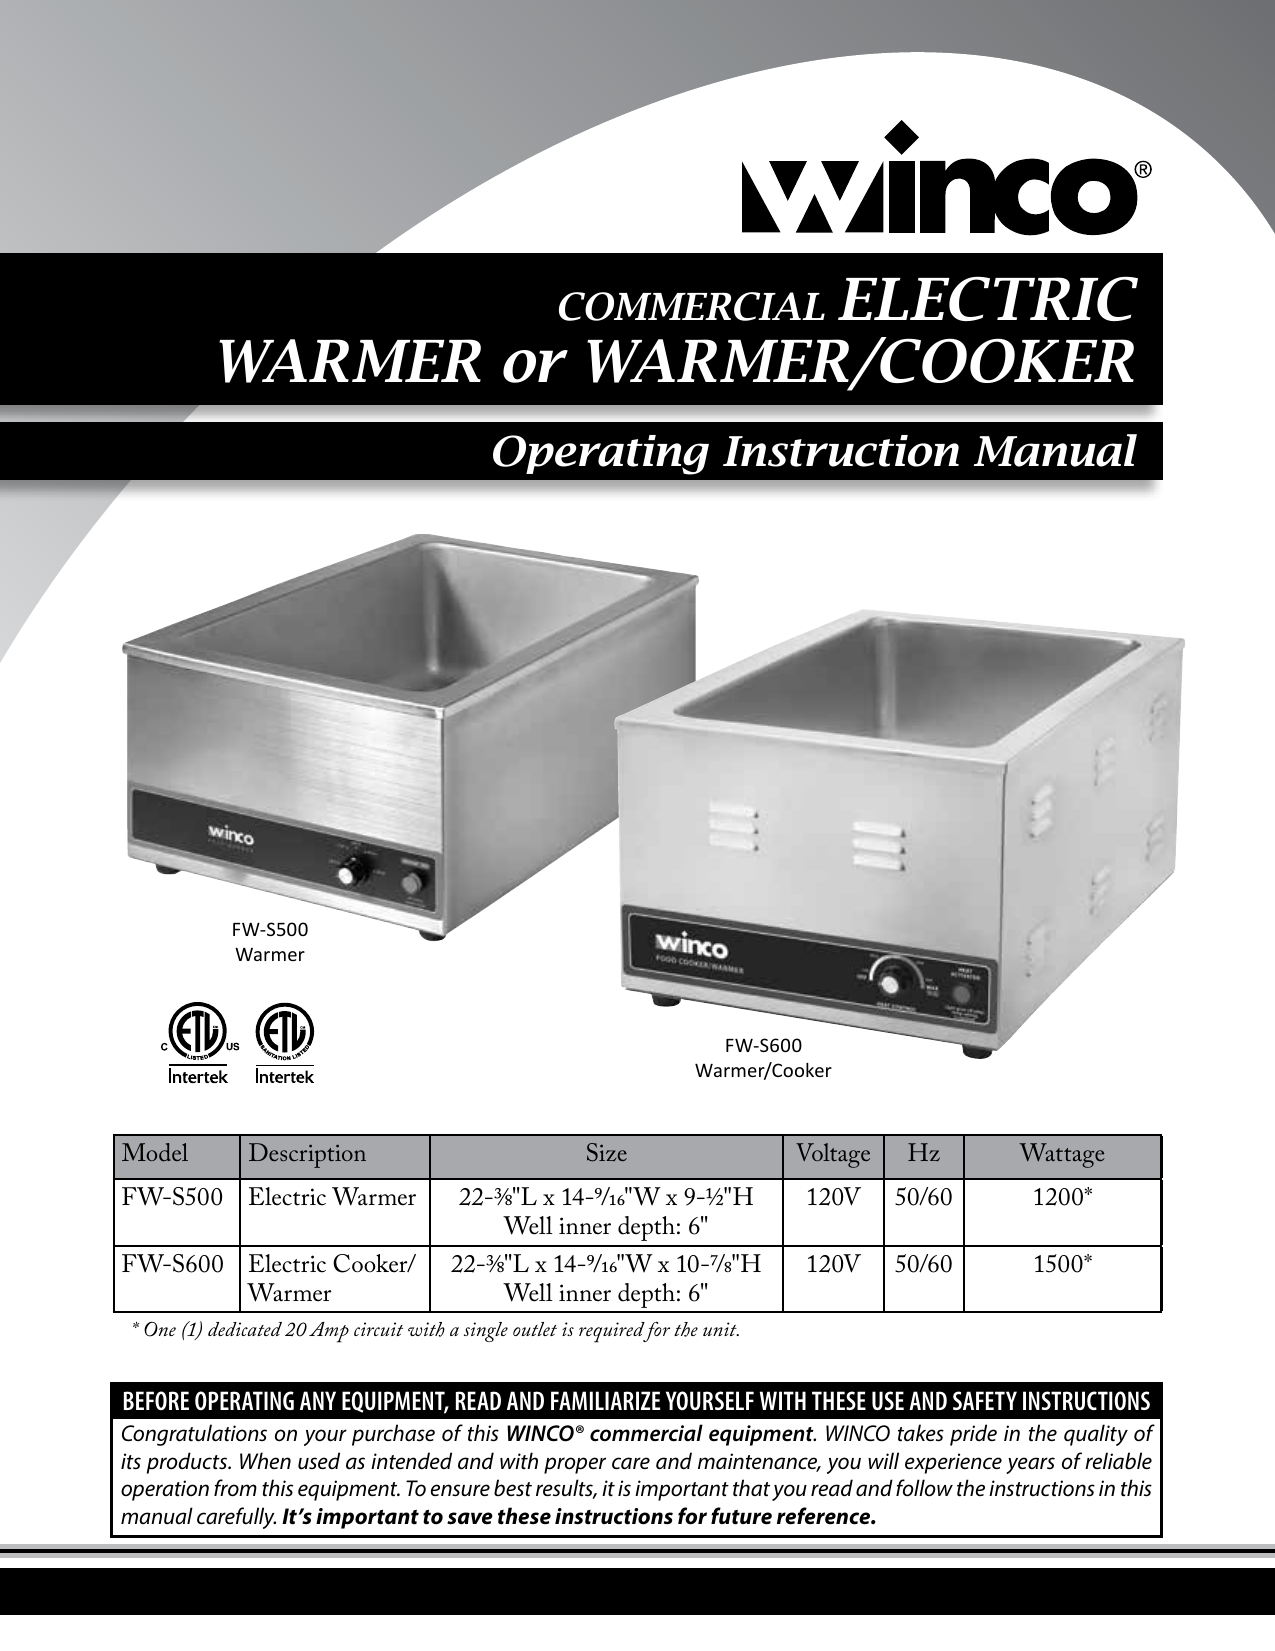 Winco ECW-1 Electric Coffee Warmer, Single Burner 120V, 200W